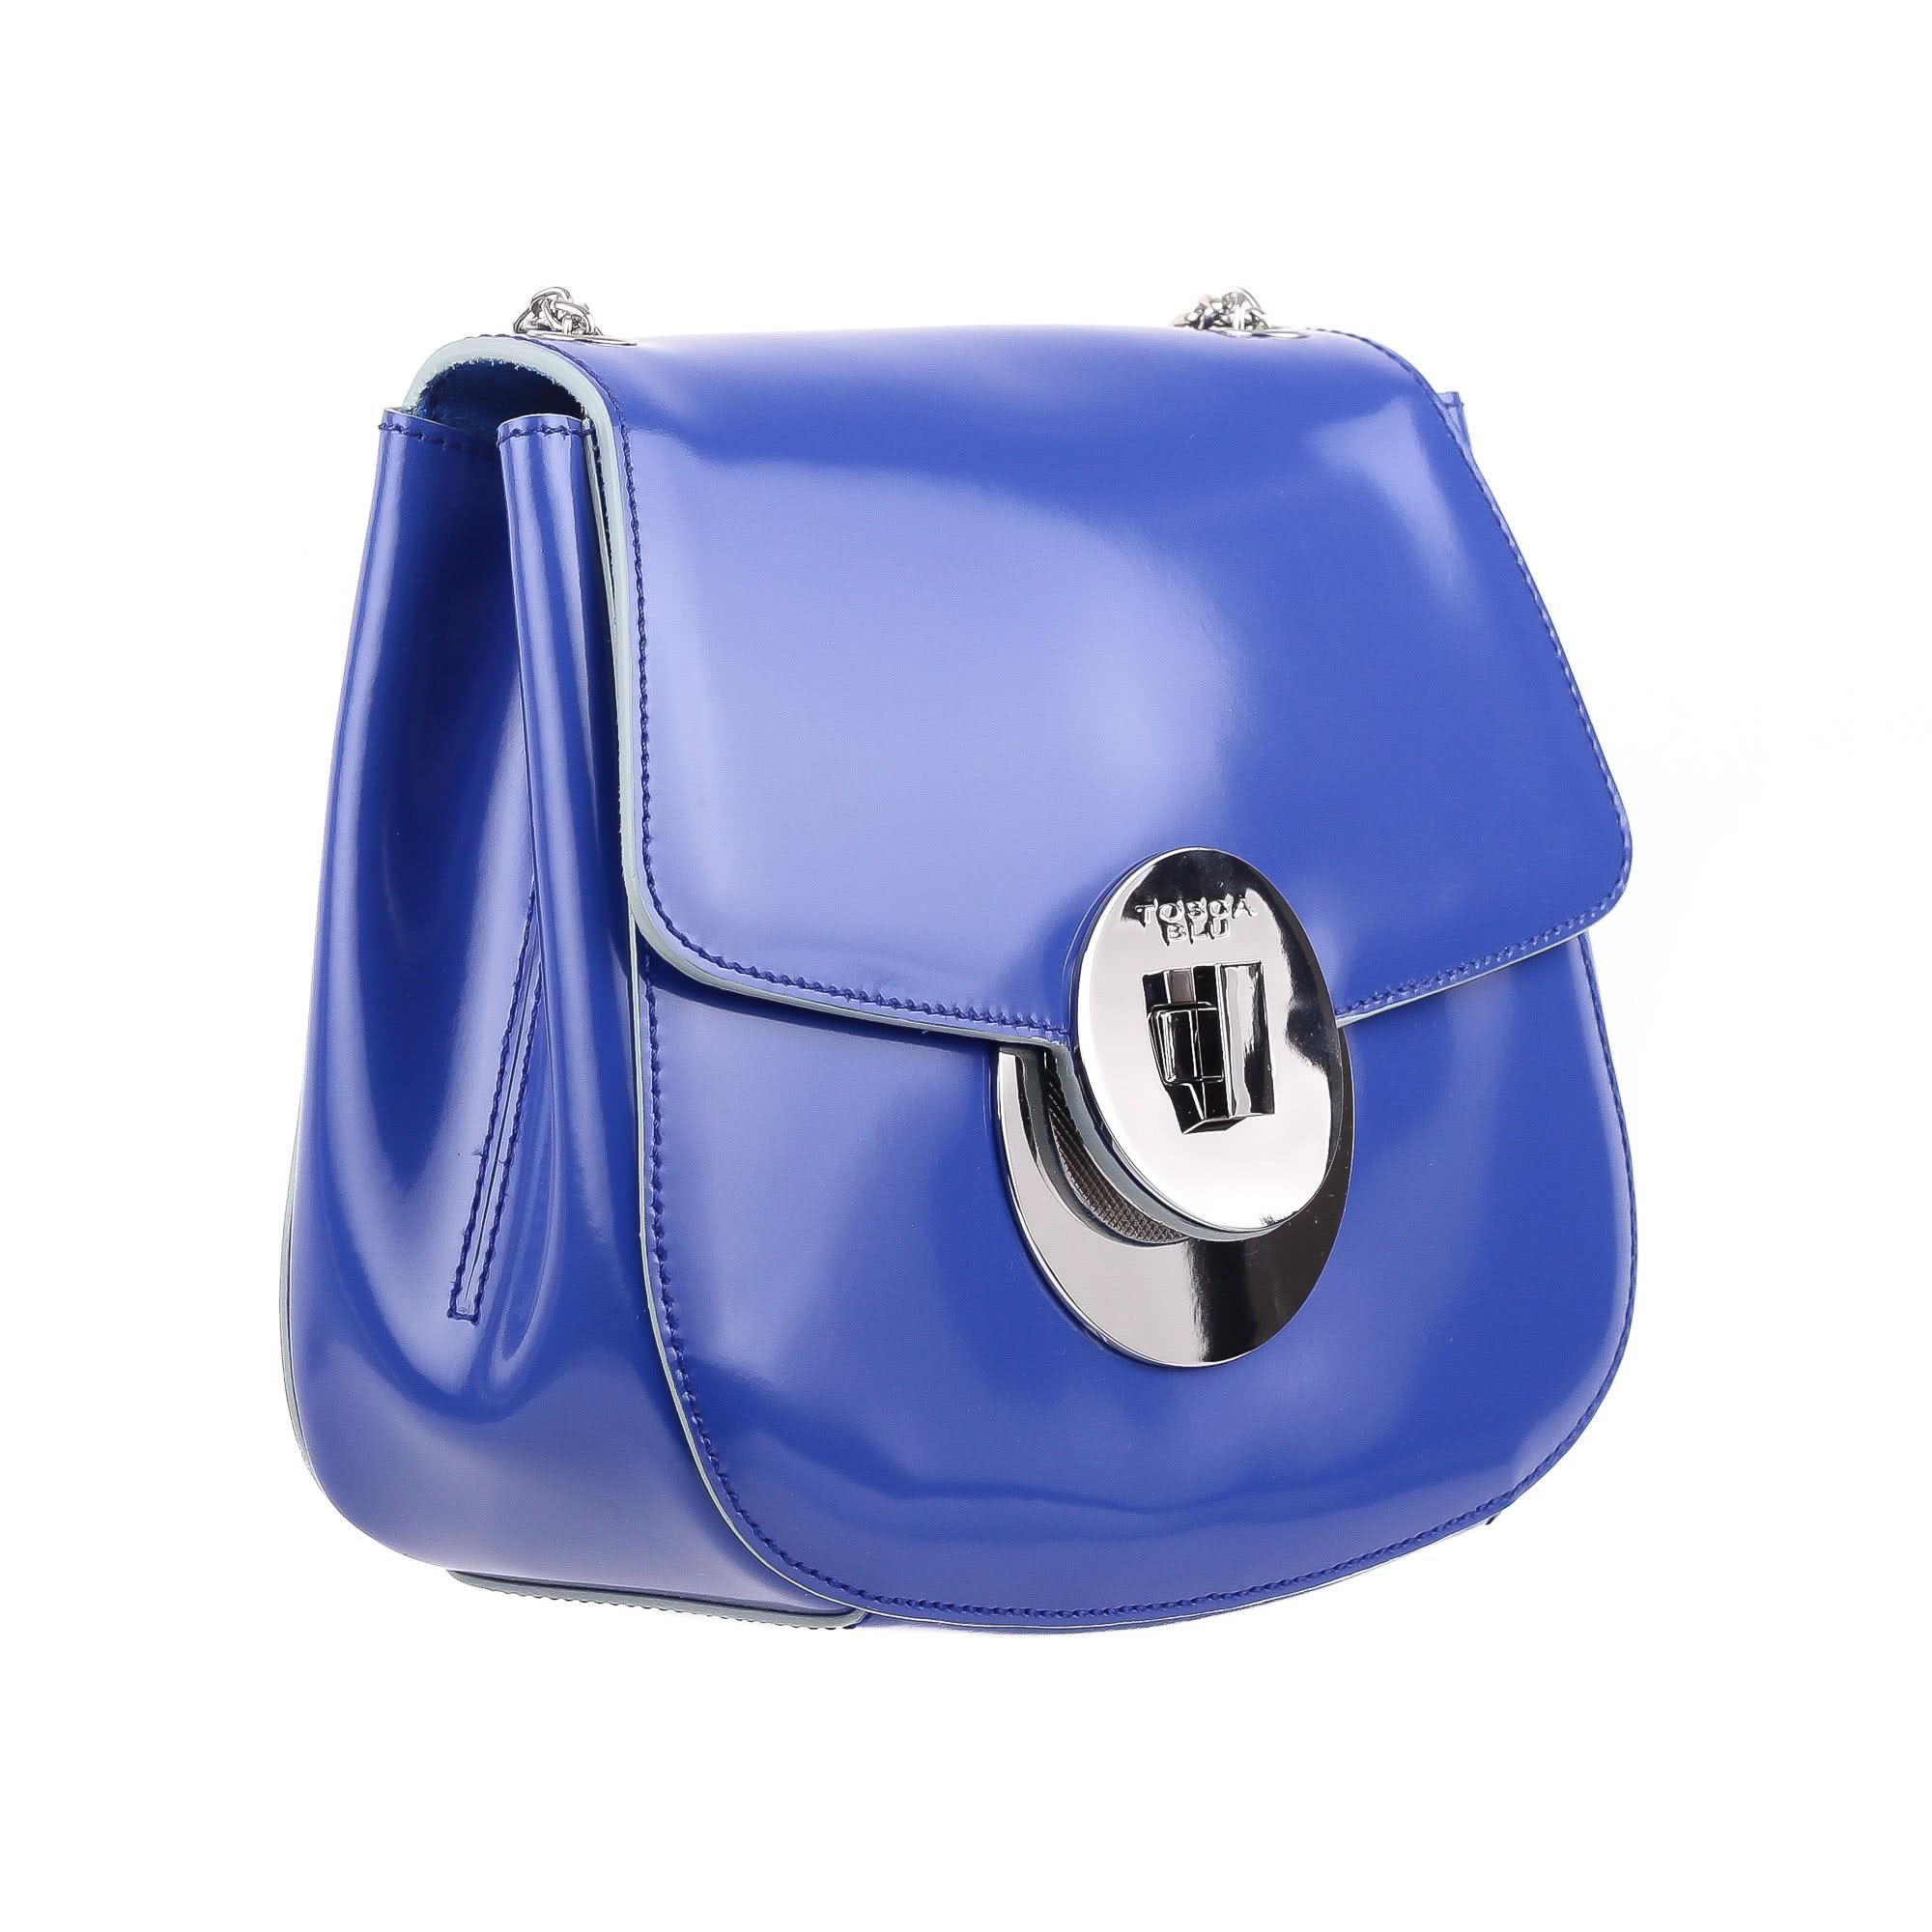 Blu сумки. Tosca Blu сумка пельмень. Женская сумка синяя Tosca Blu. Сумка Tosca Blu женская голубая. Tosca Blu сумка ts19rb370 Blue.